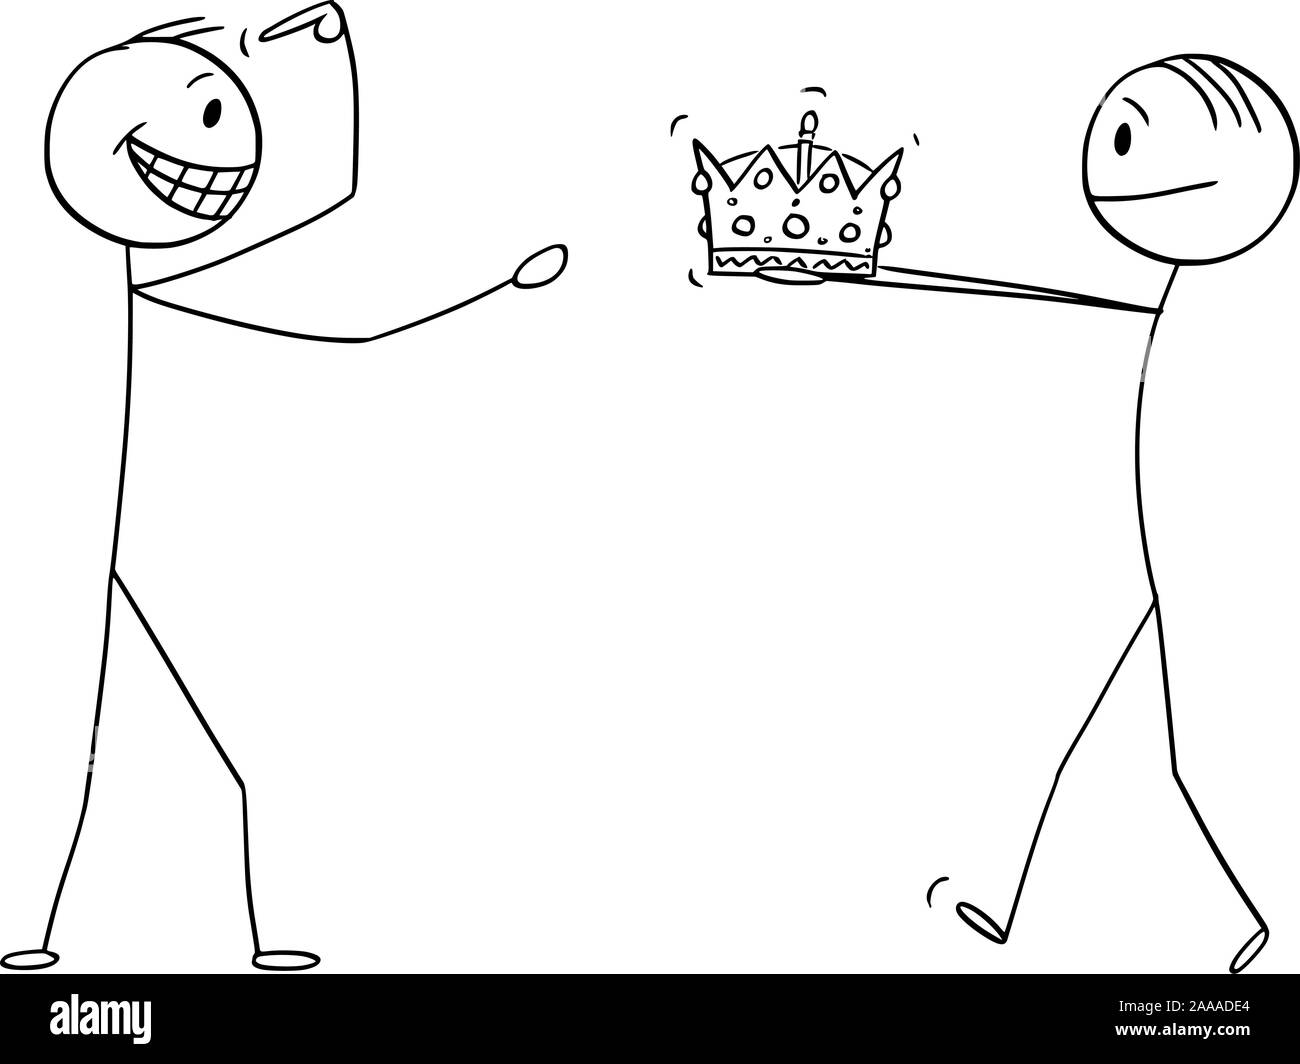 Vektor cartoon Strichmännchen Zeichnen konzeptionelle Darstellung der Mann, der die Krone des Königs oder Reich zu zuversichtlich Mann während der Krönung Krönung oder Zeremonie. Stock Vektor